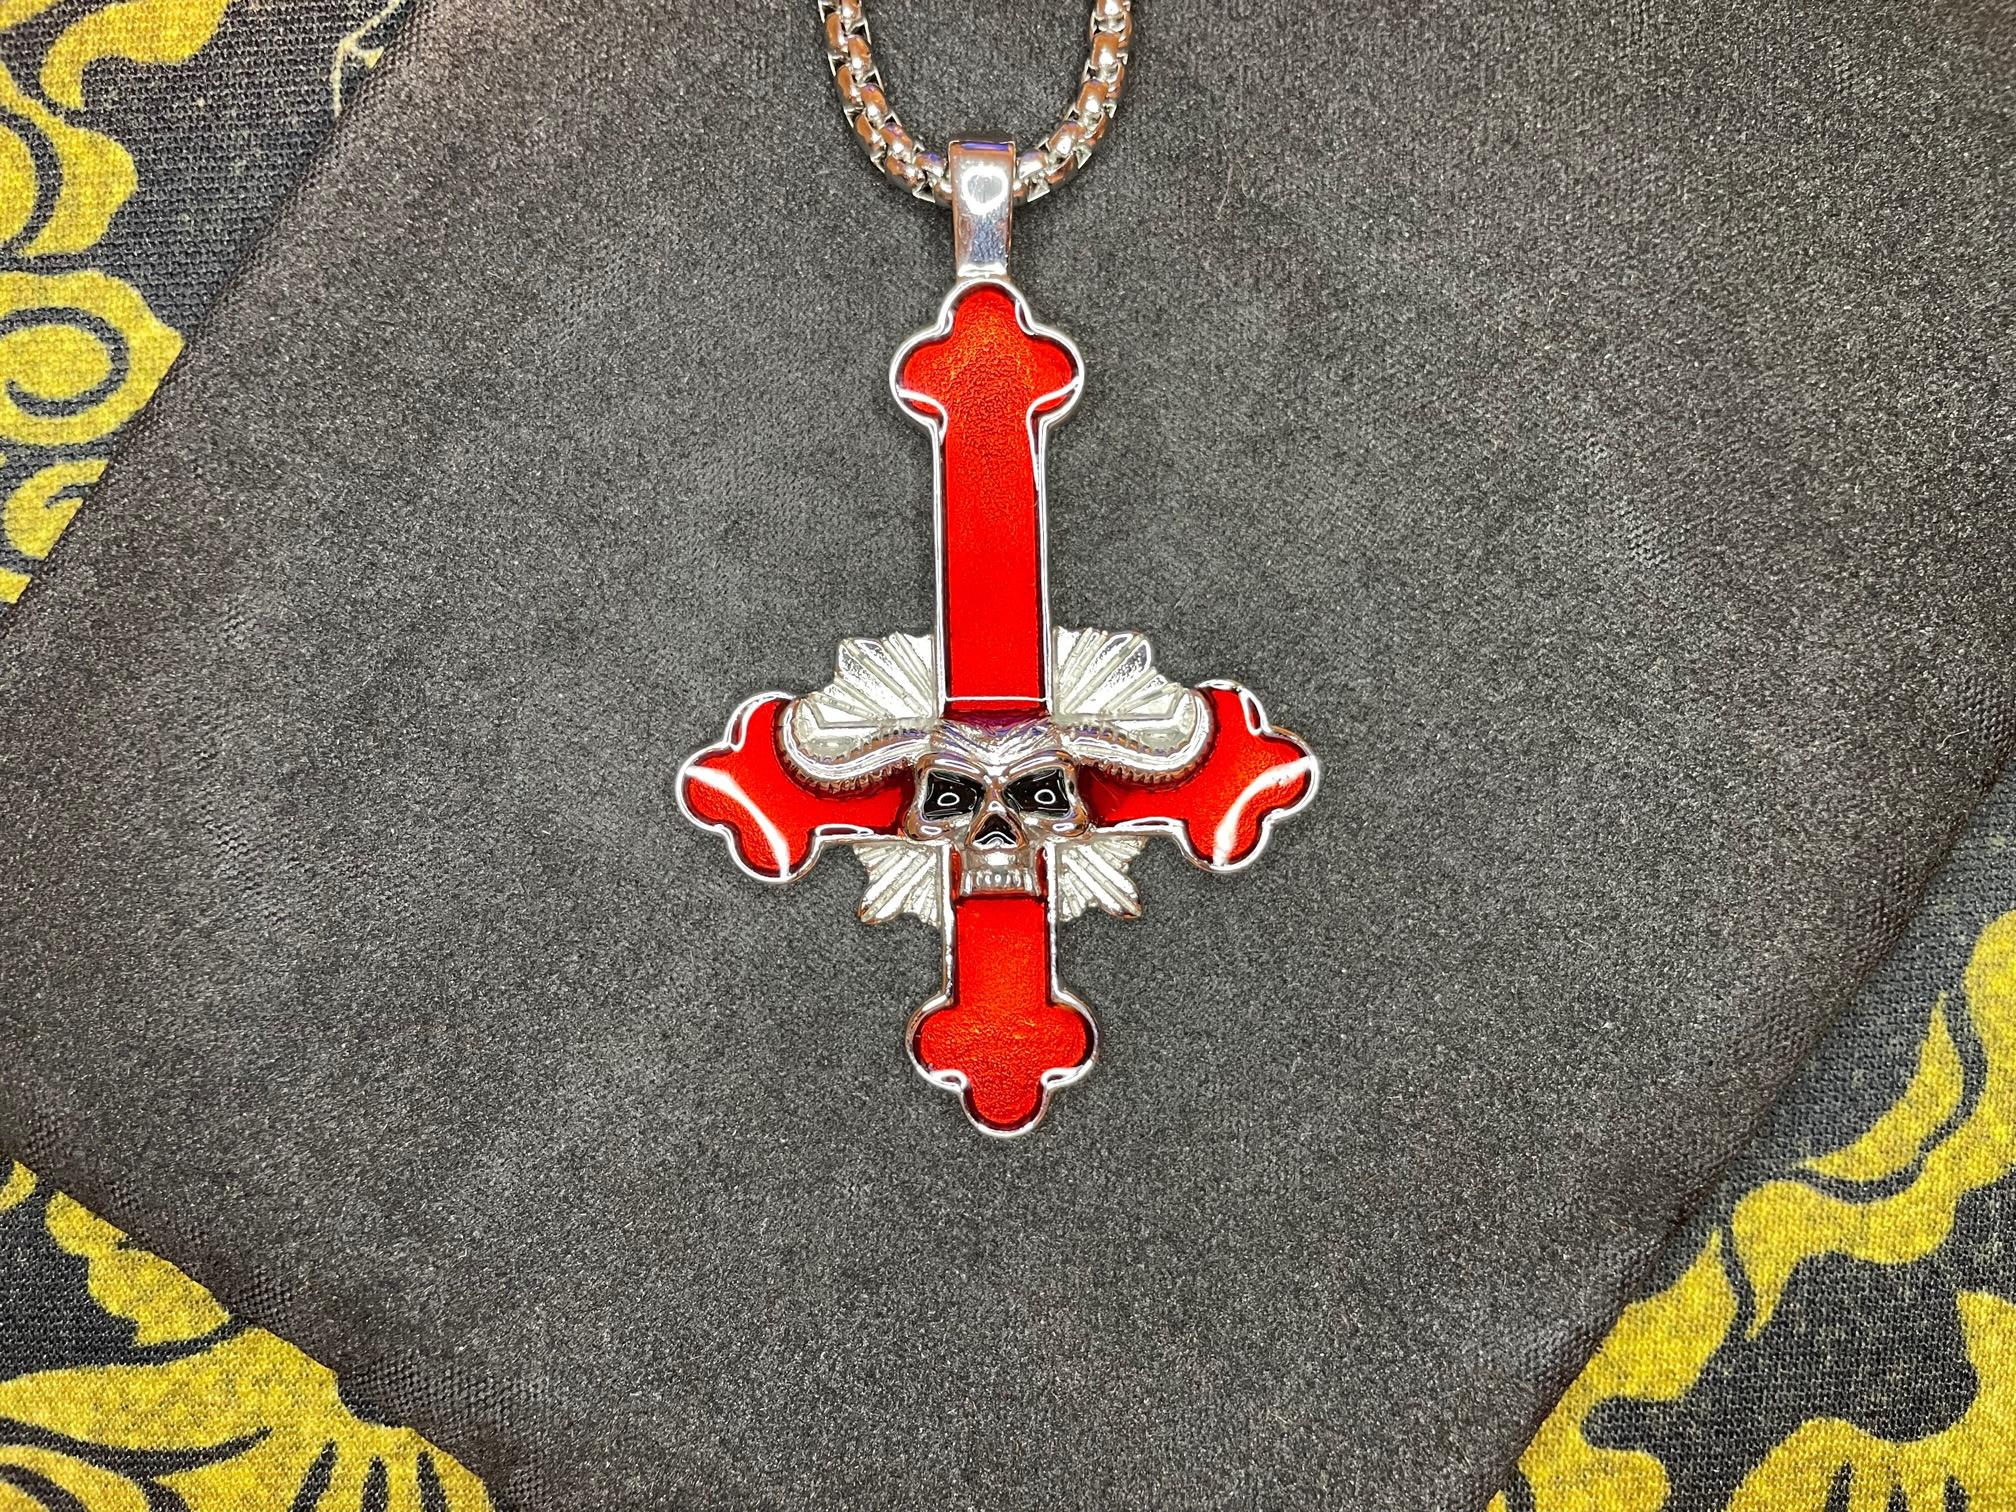 Upside Down Inverted Cross w/ Horned Skull Stainless Steel Pendant Biker Necklace